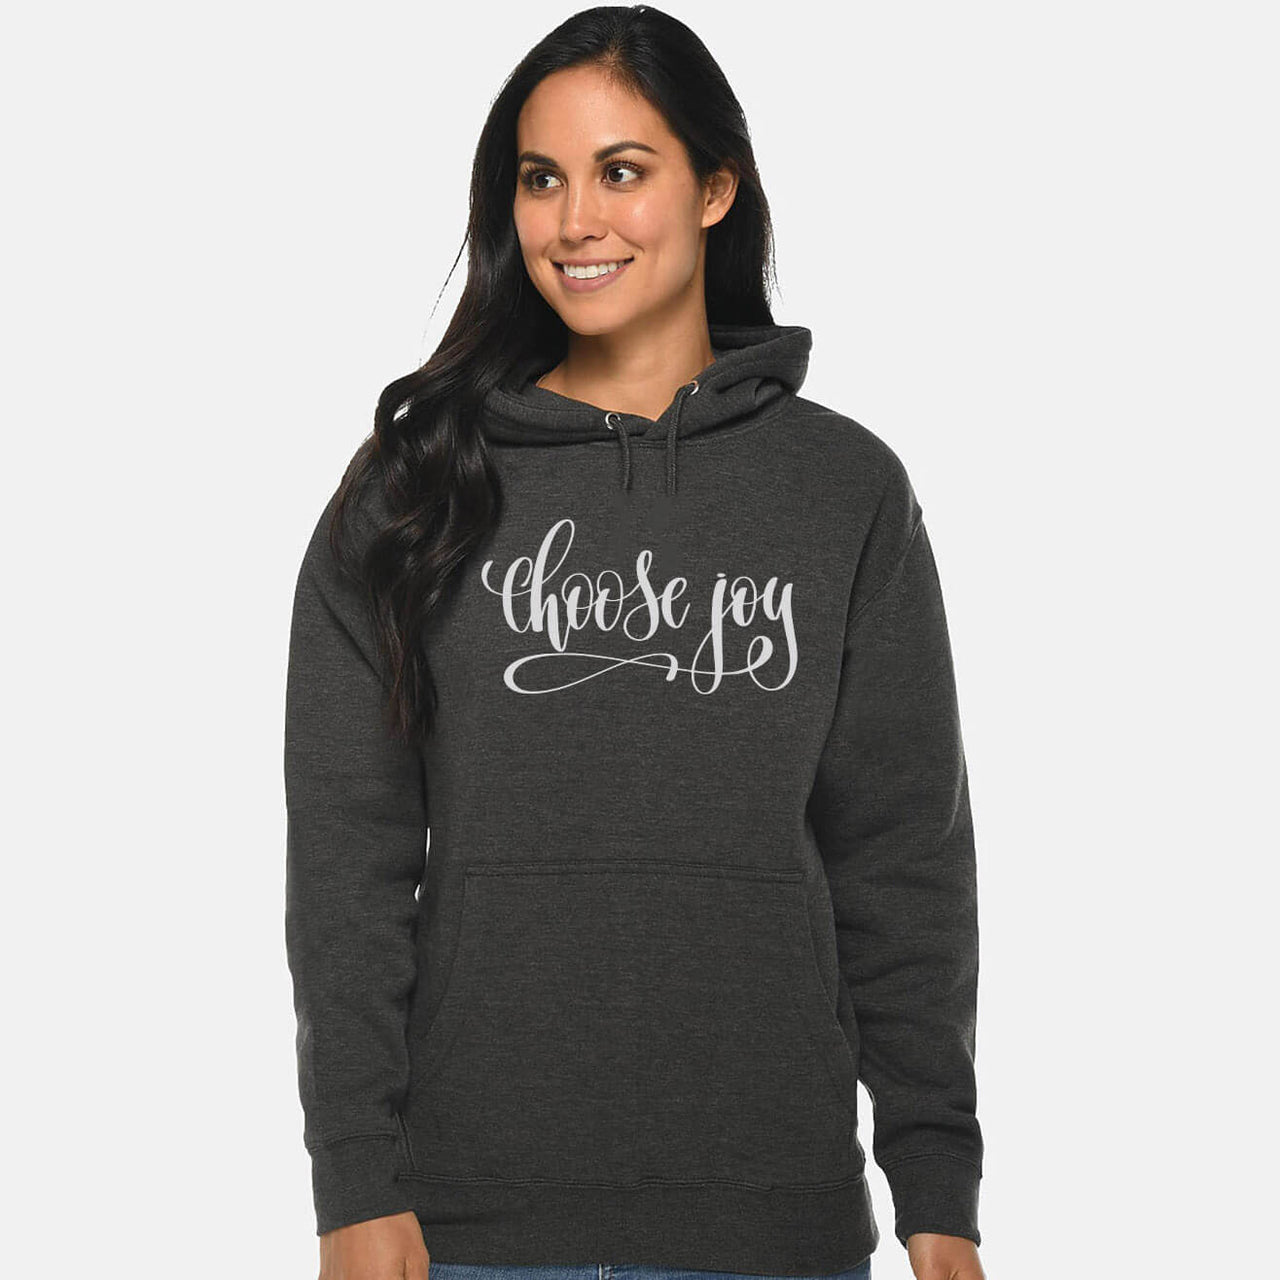 Choose Joy Unisex Sweatshirt Hoodie